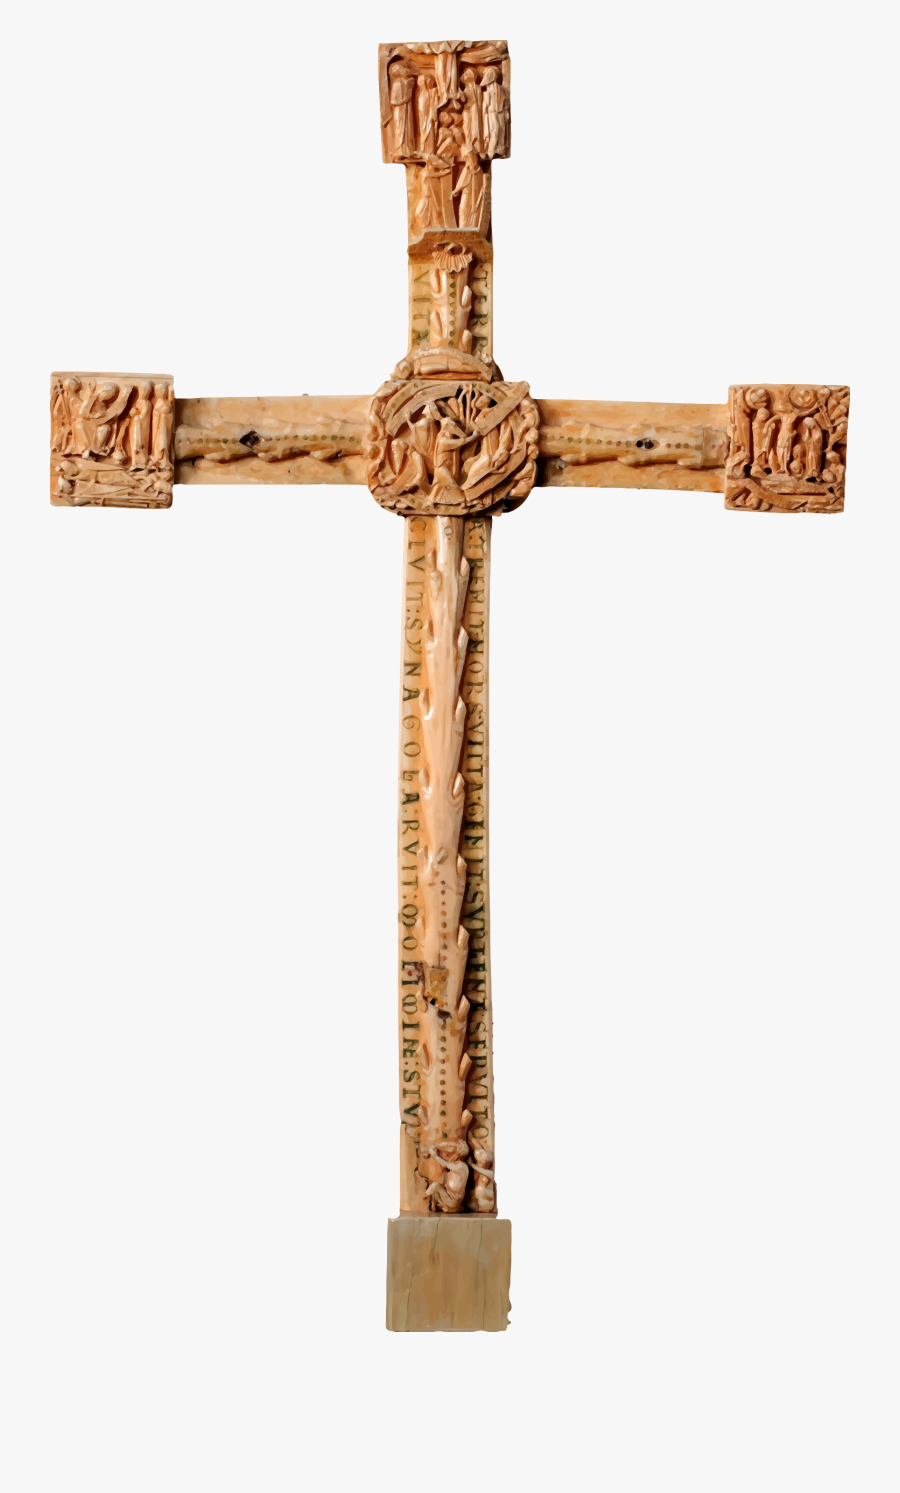 Carved Big Image Png - Carved Cross, Transparent Clipart